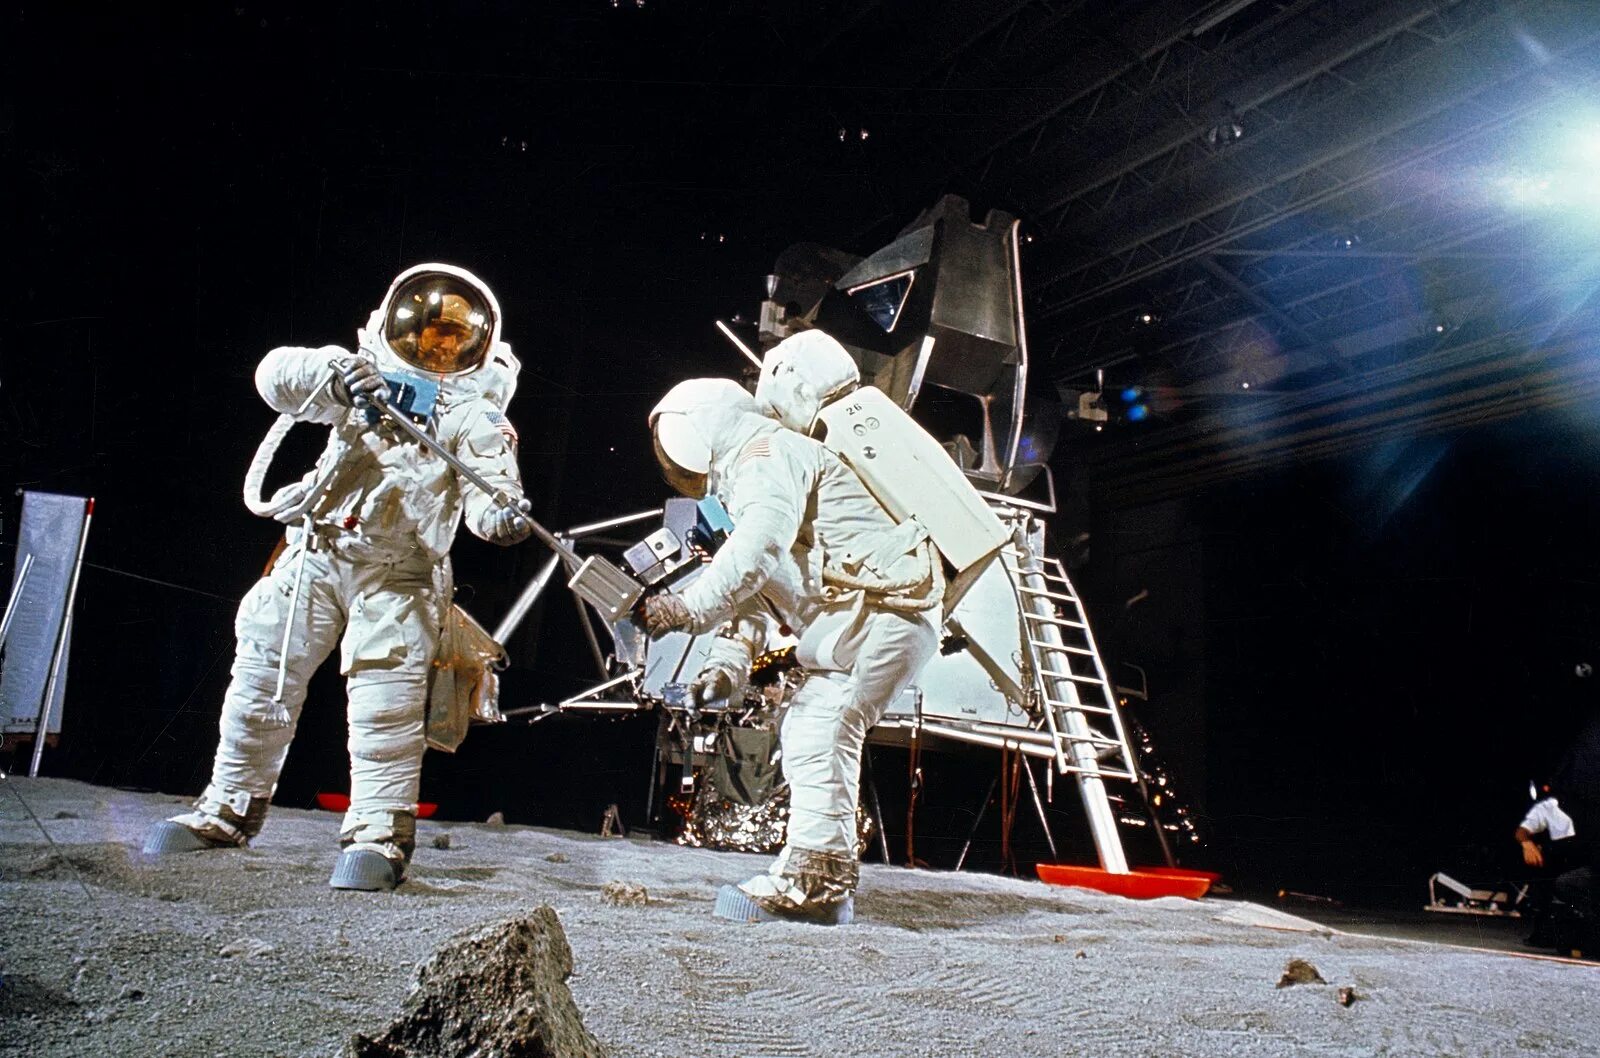 Аполлон 1969. Аполлон 11 1969. The astronauts on the moon